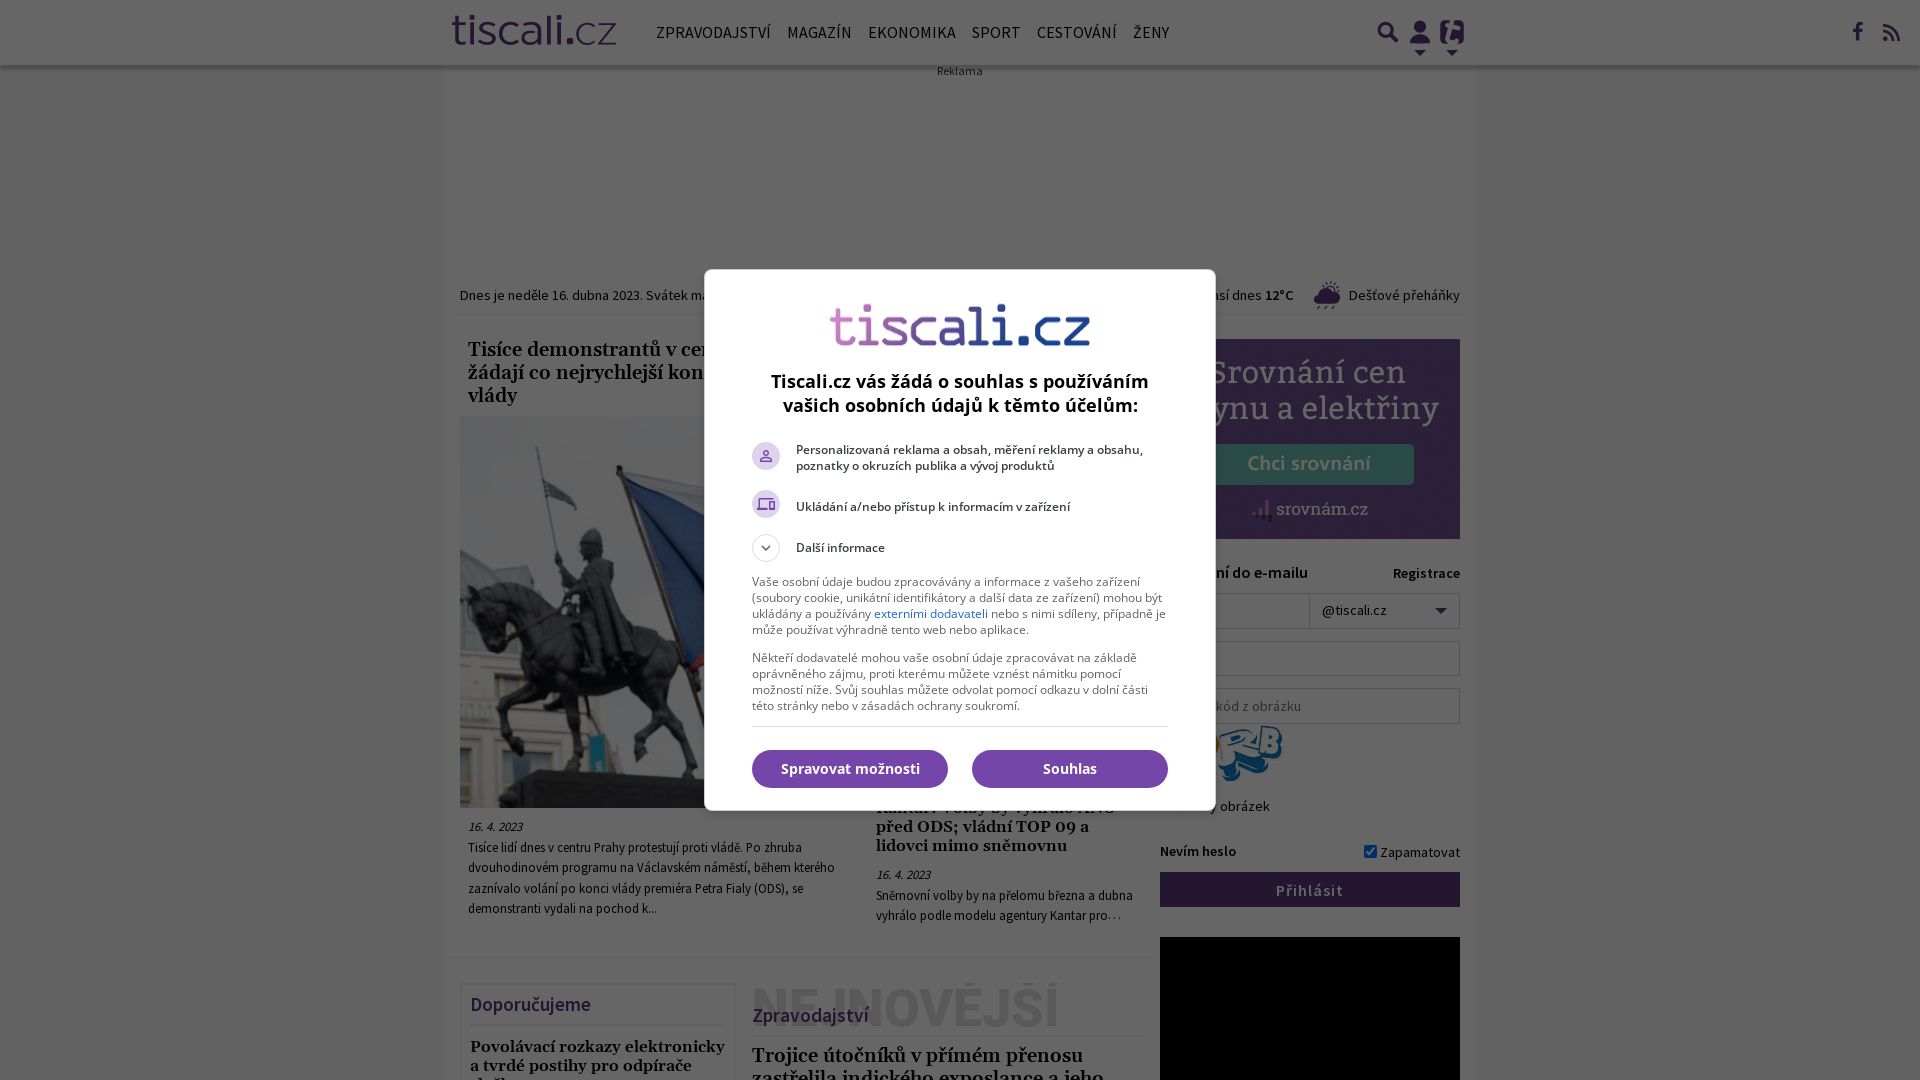 вебсайт tiscali.cz Є   ONLINE